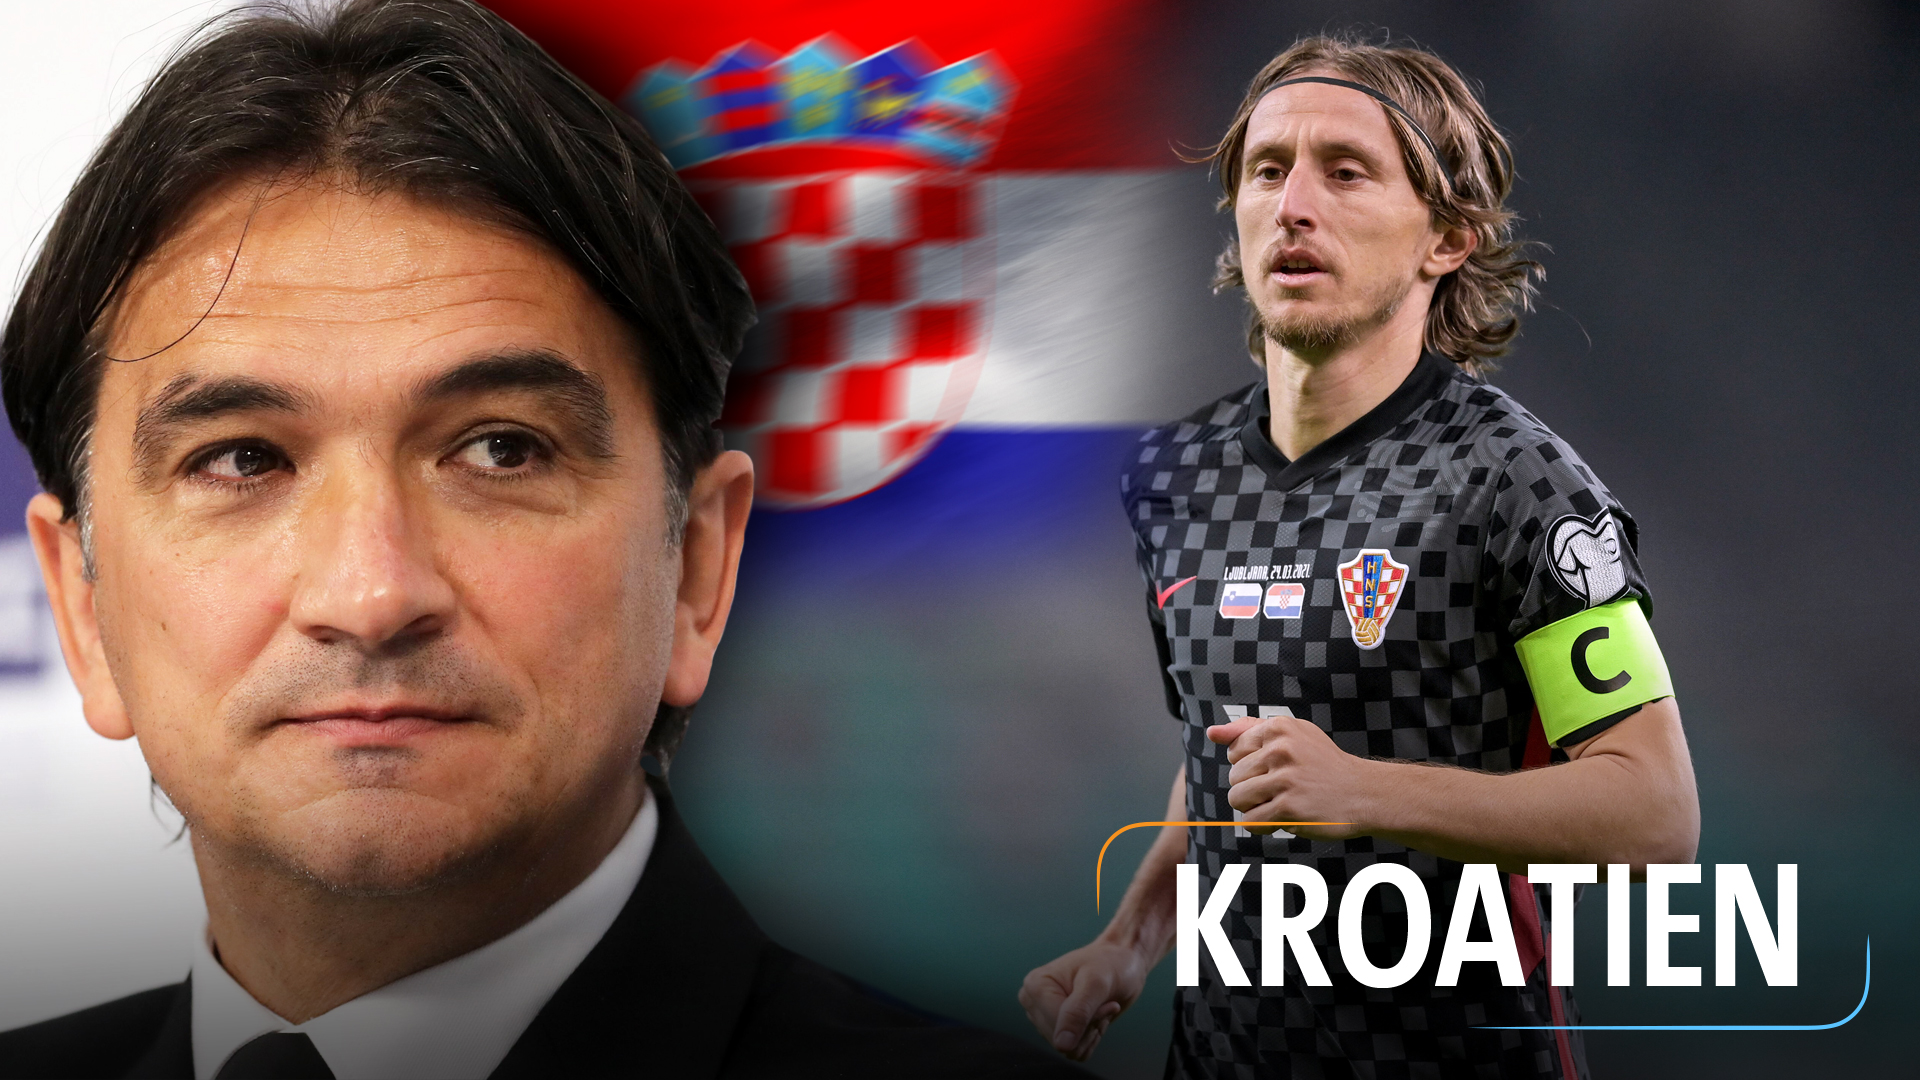 Teaserbild für die Nationalmannschaft: Kroatien